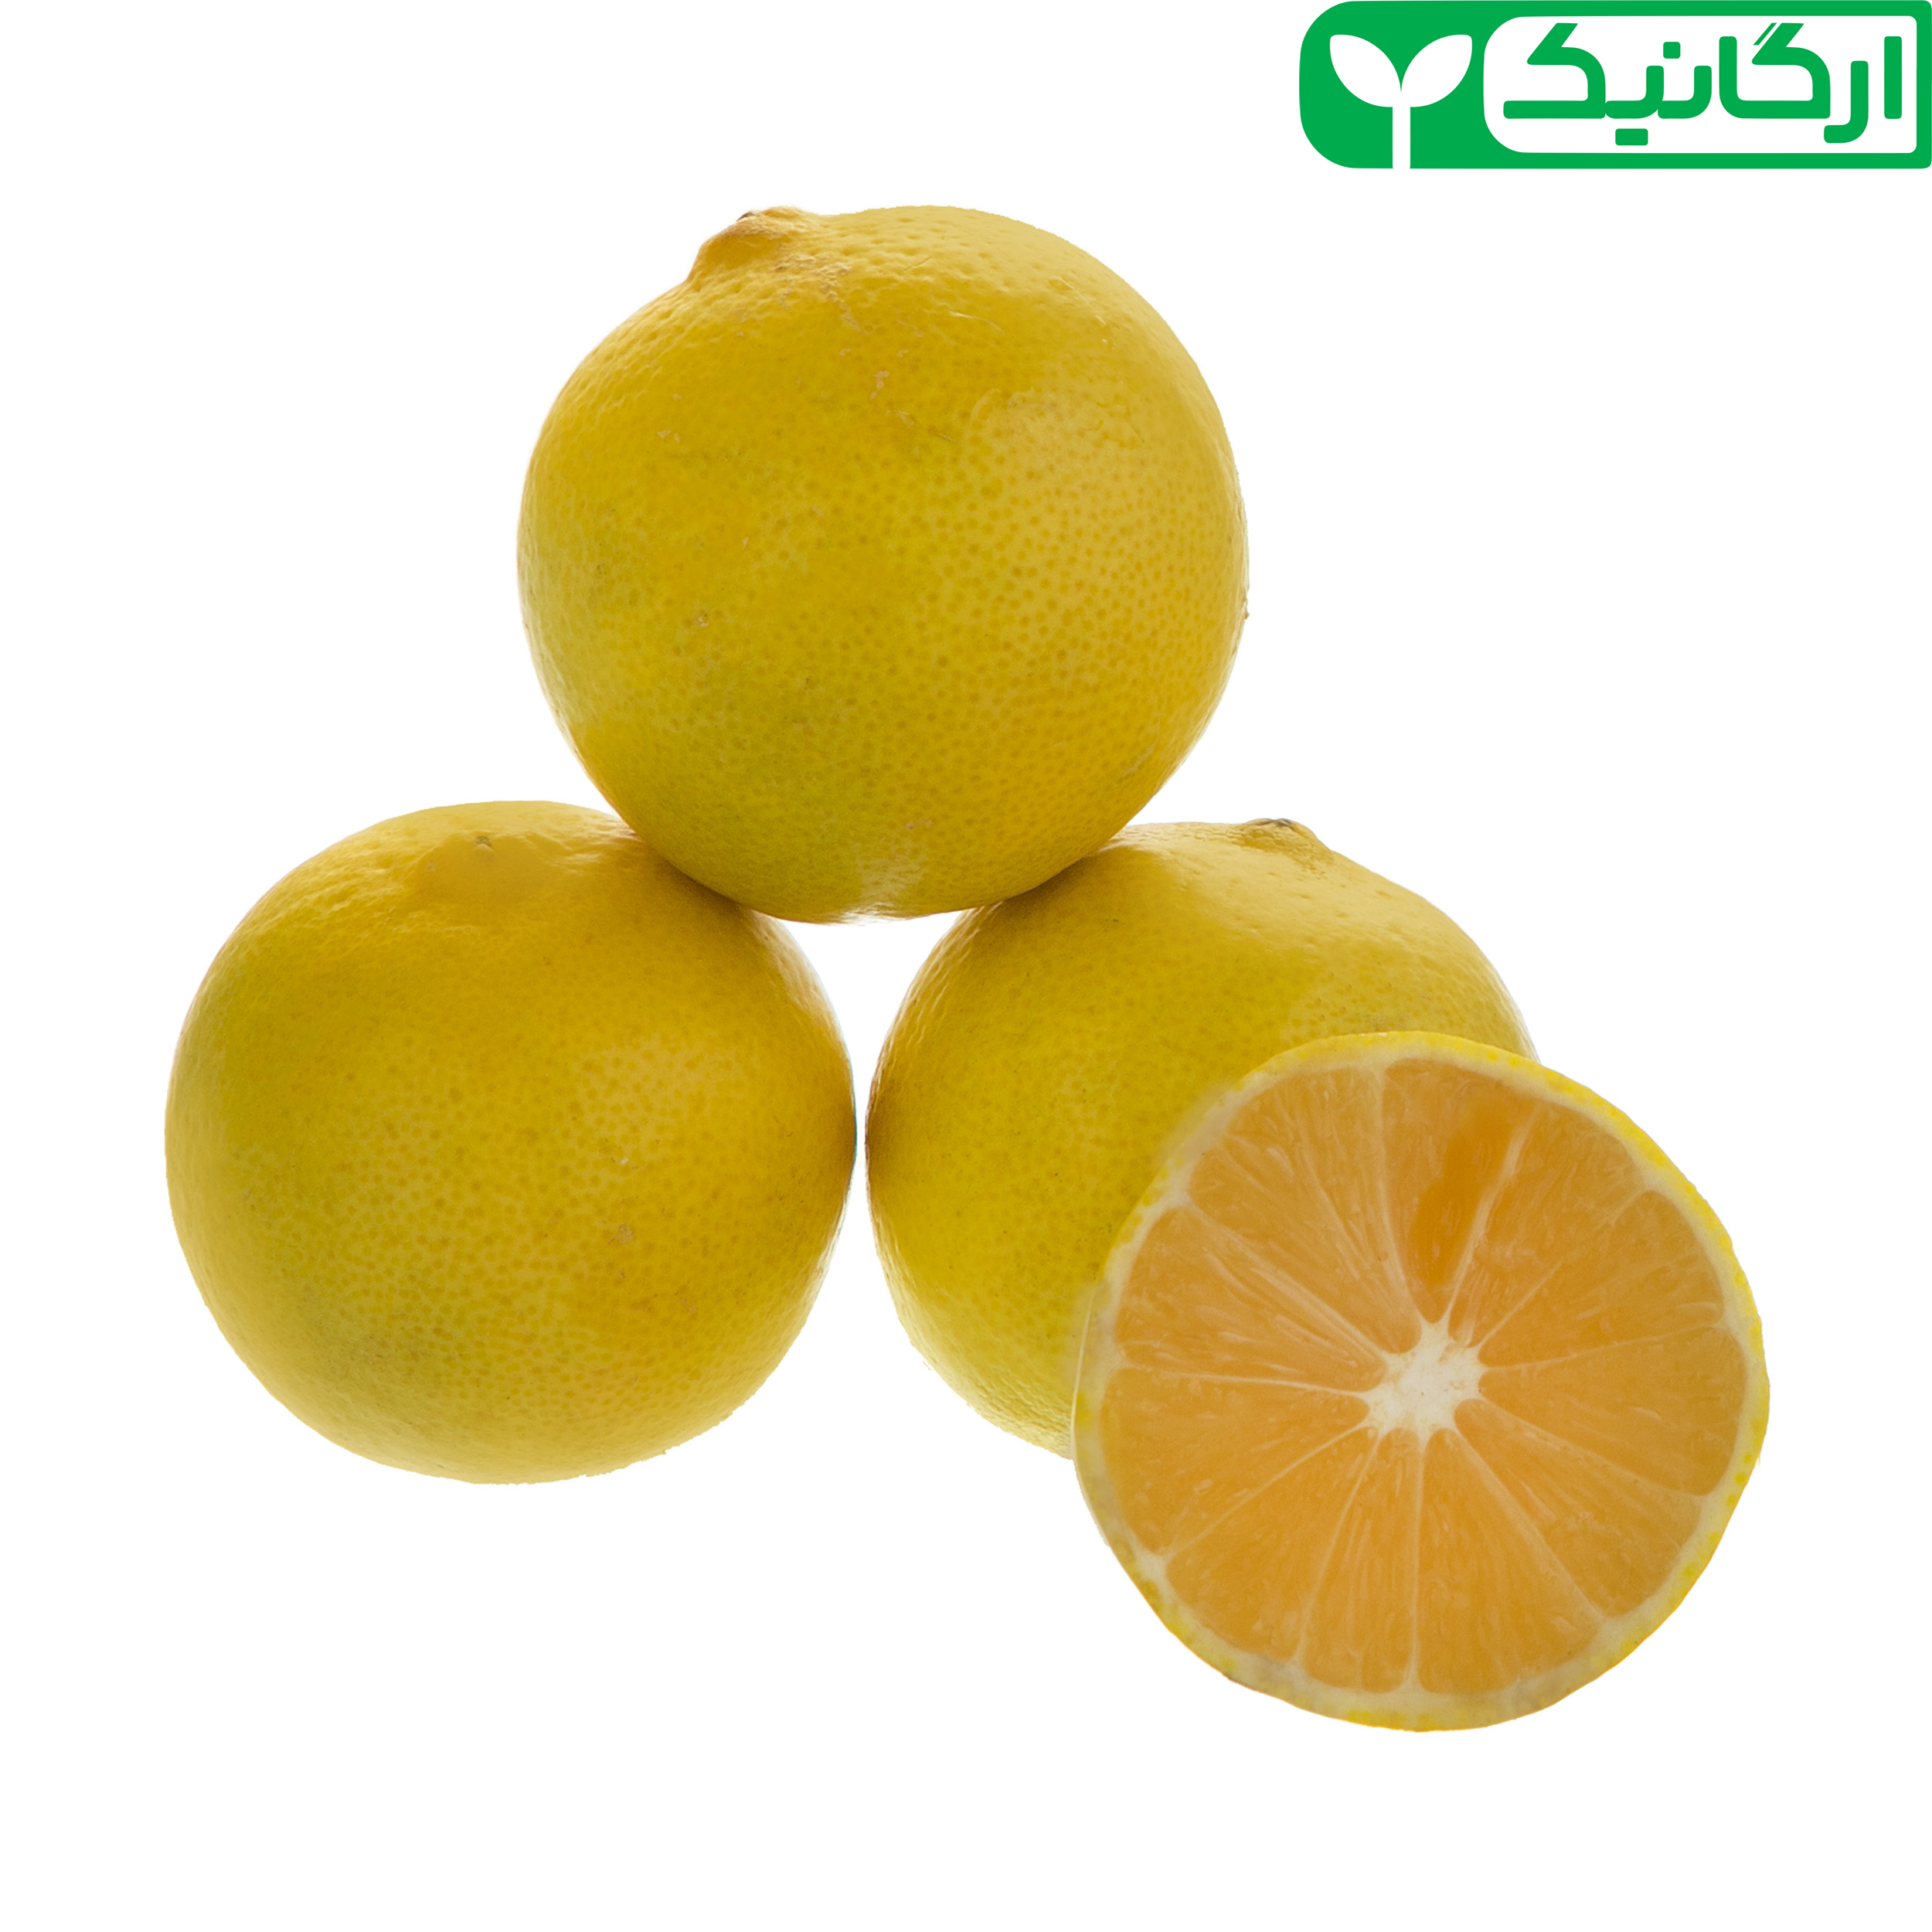 لیمو شیرین ارگانیک رضوانی - 1 کیلوگرم